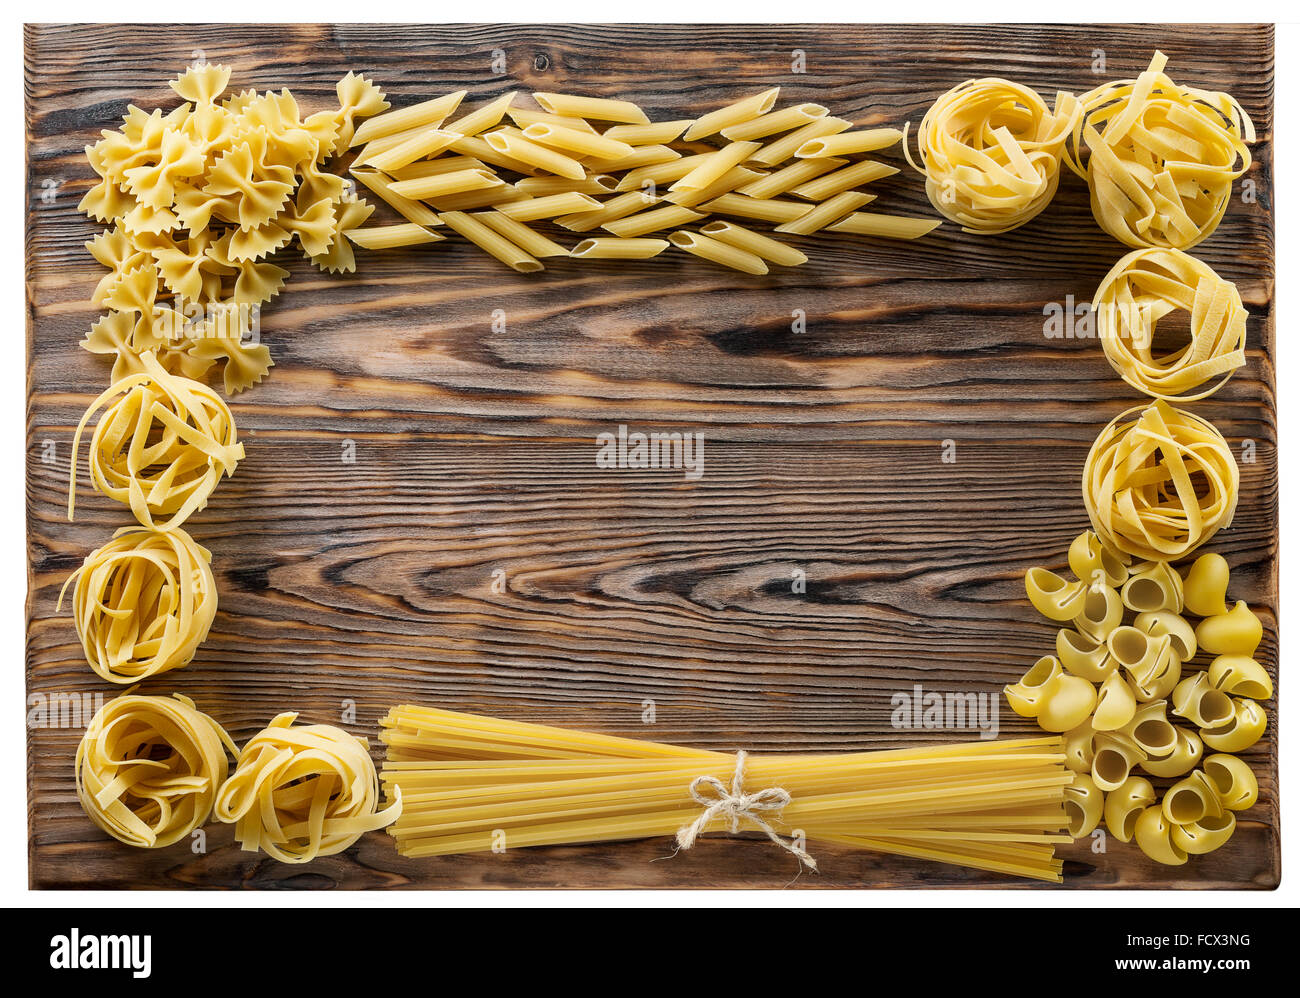 Verschiedene Arten und Formen der italienischen Pasta auf hölzernen Hintergrund. Stockfoto